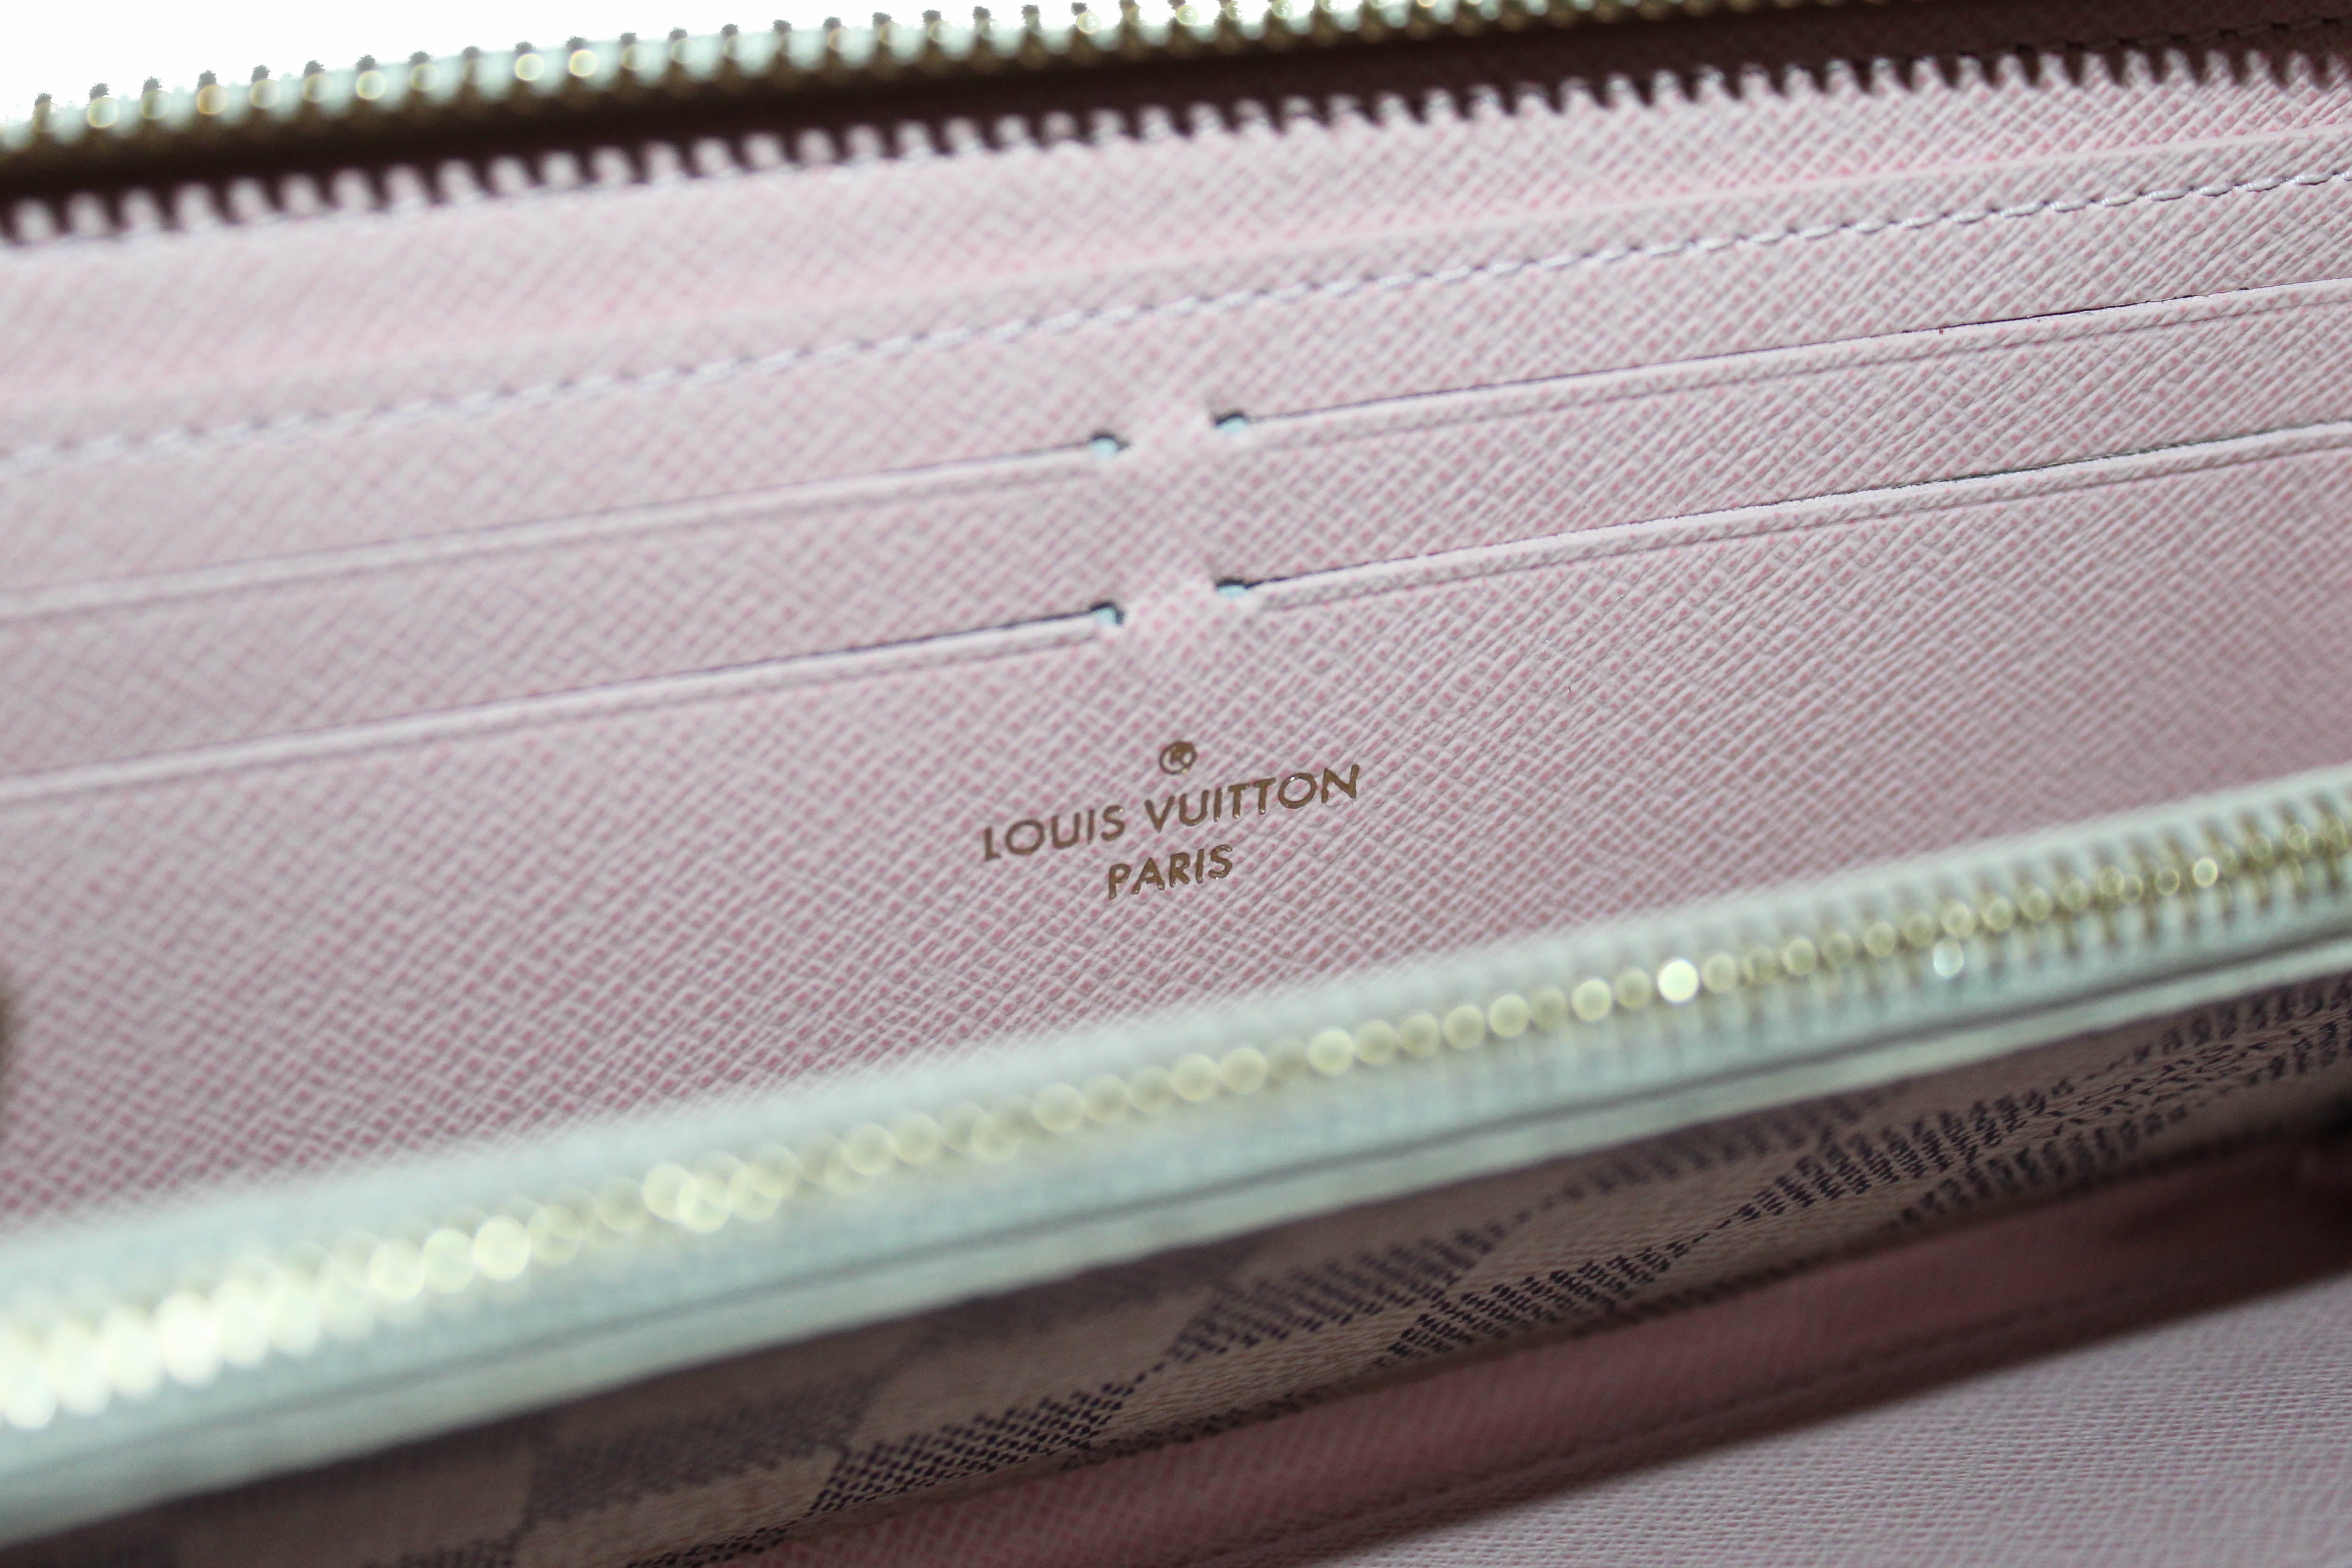 Louis Vuitton Damier Ebene Zippy Wallet with Ballerina Interior